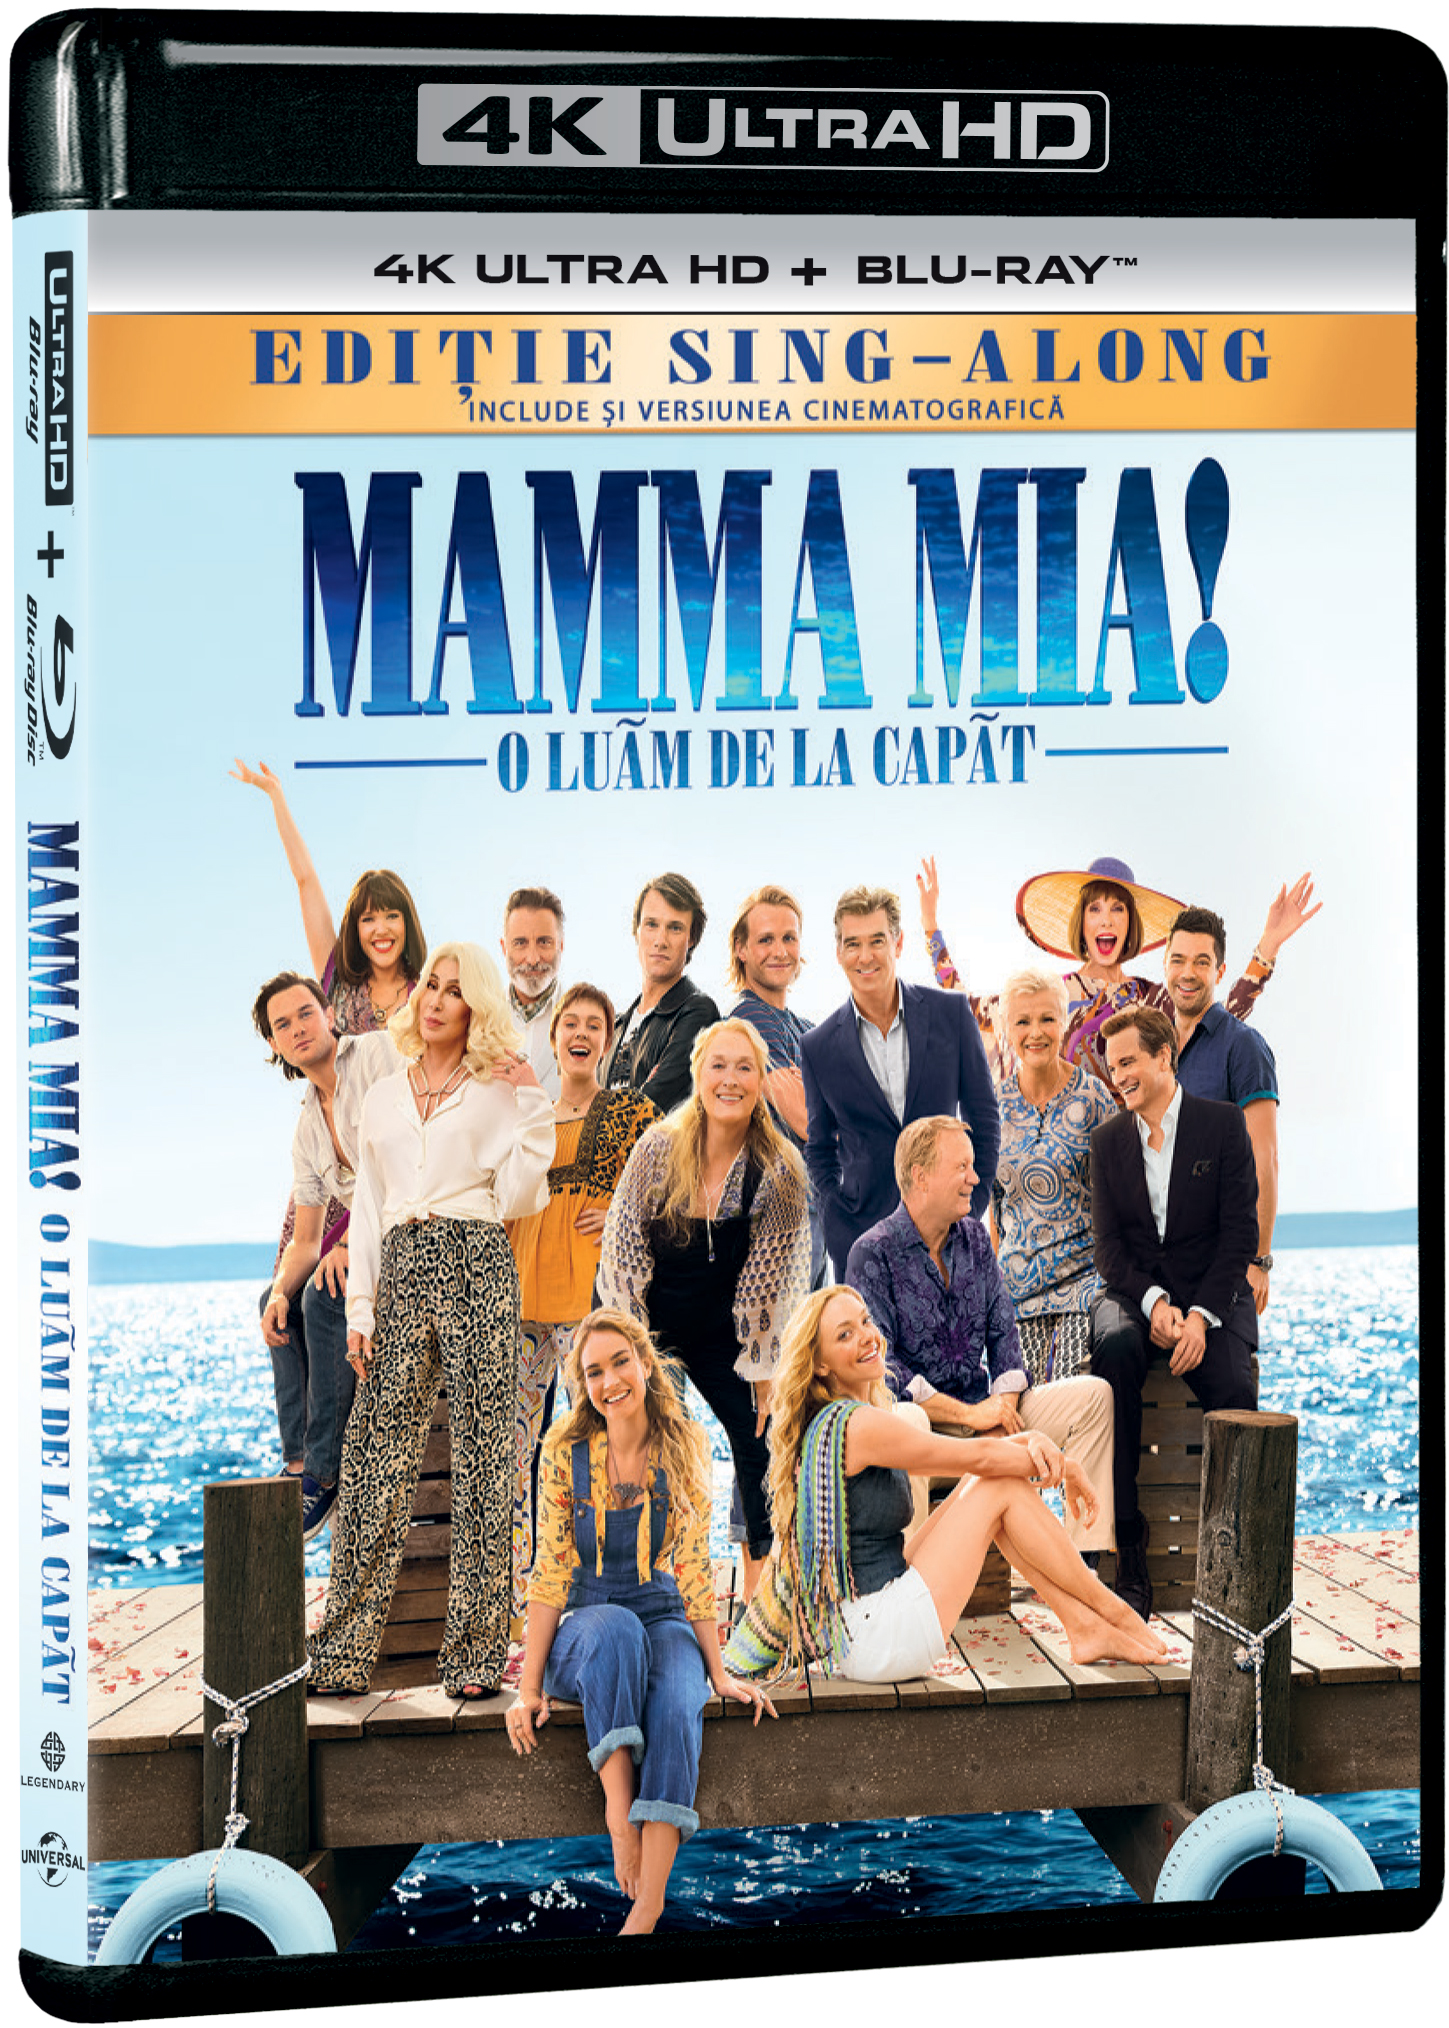 Mamma Mia! 2: O luam de la capat / Mamma Mia! Here We Go Again (4k UltraHD + Blu-Ray Disc) | Ol Parker